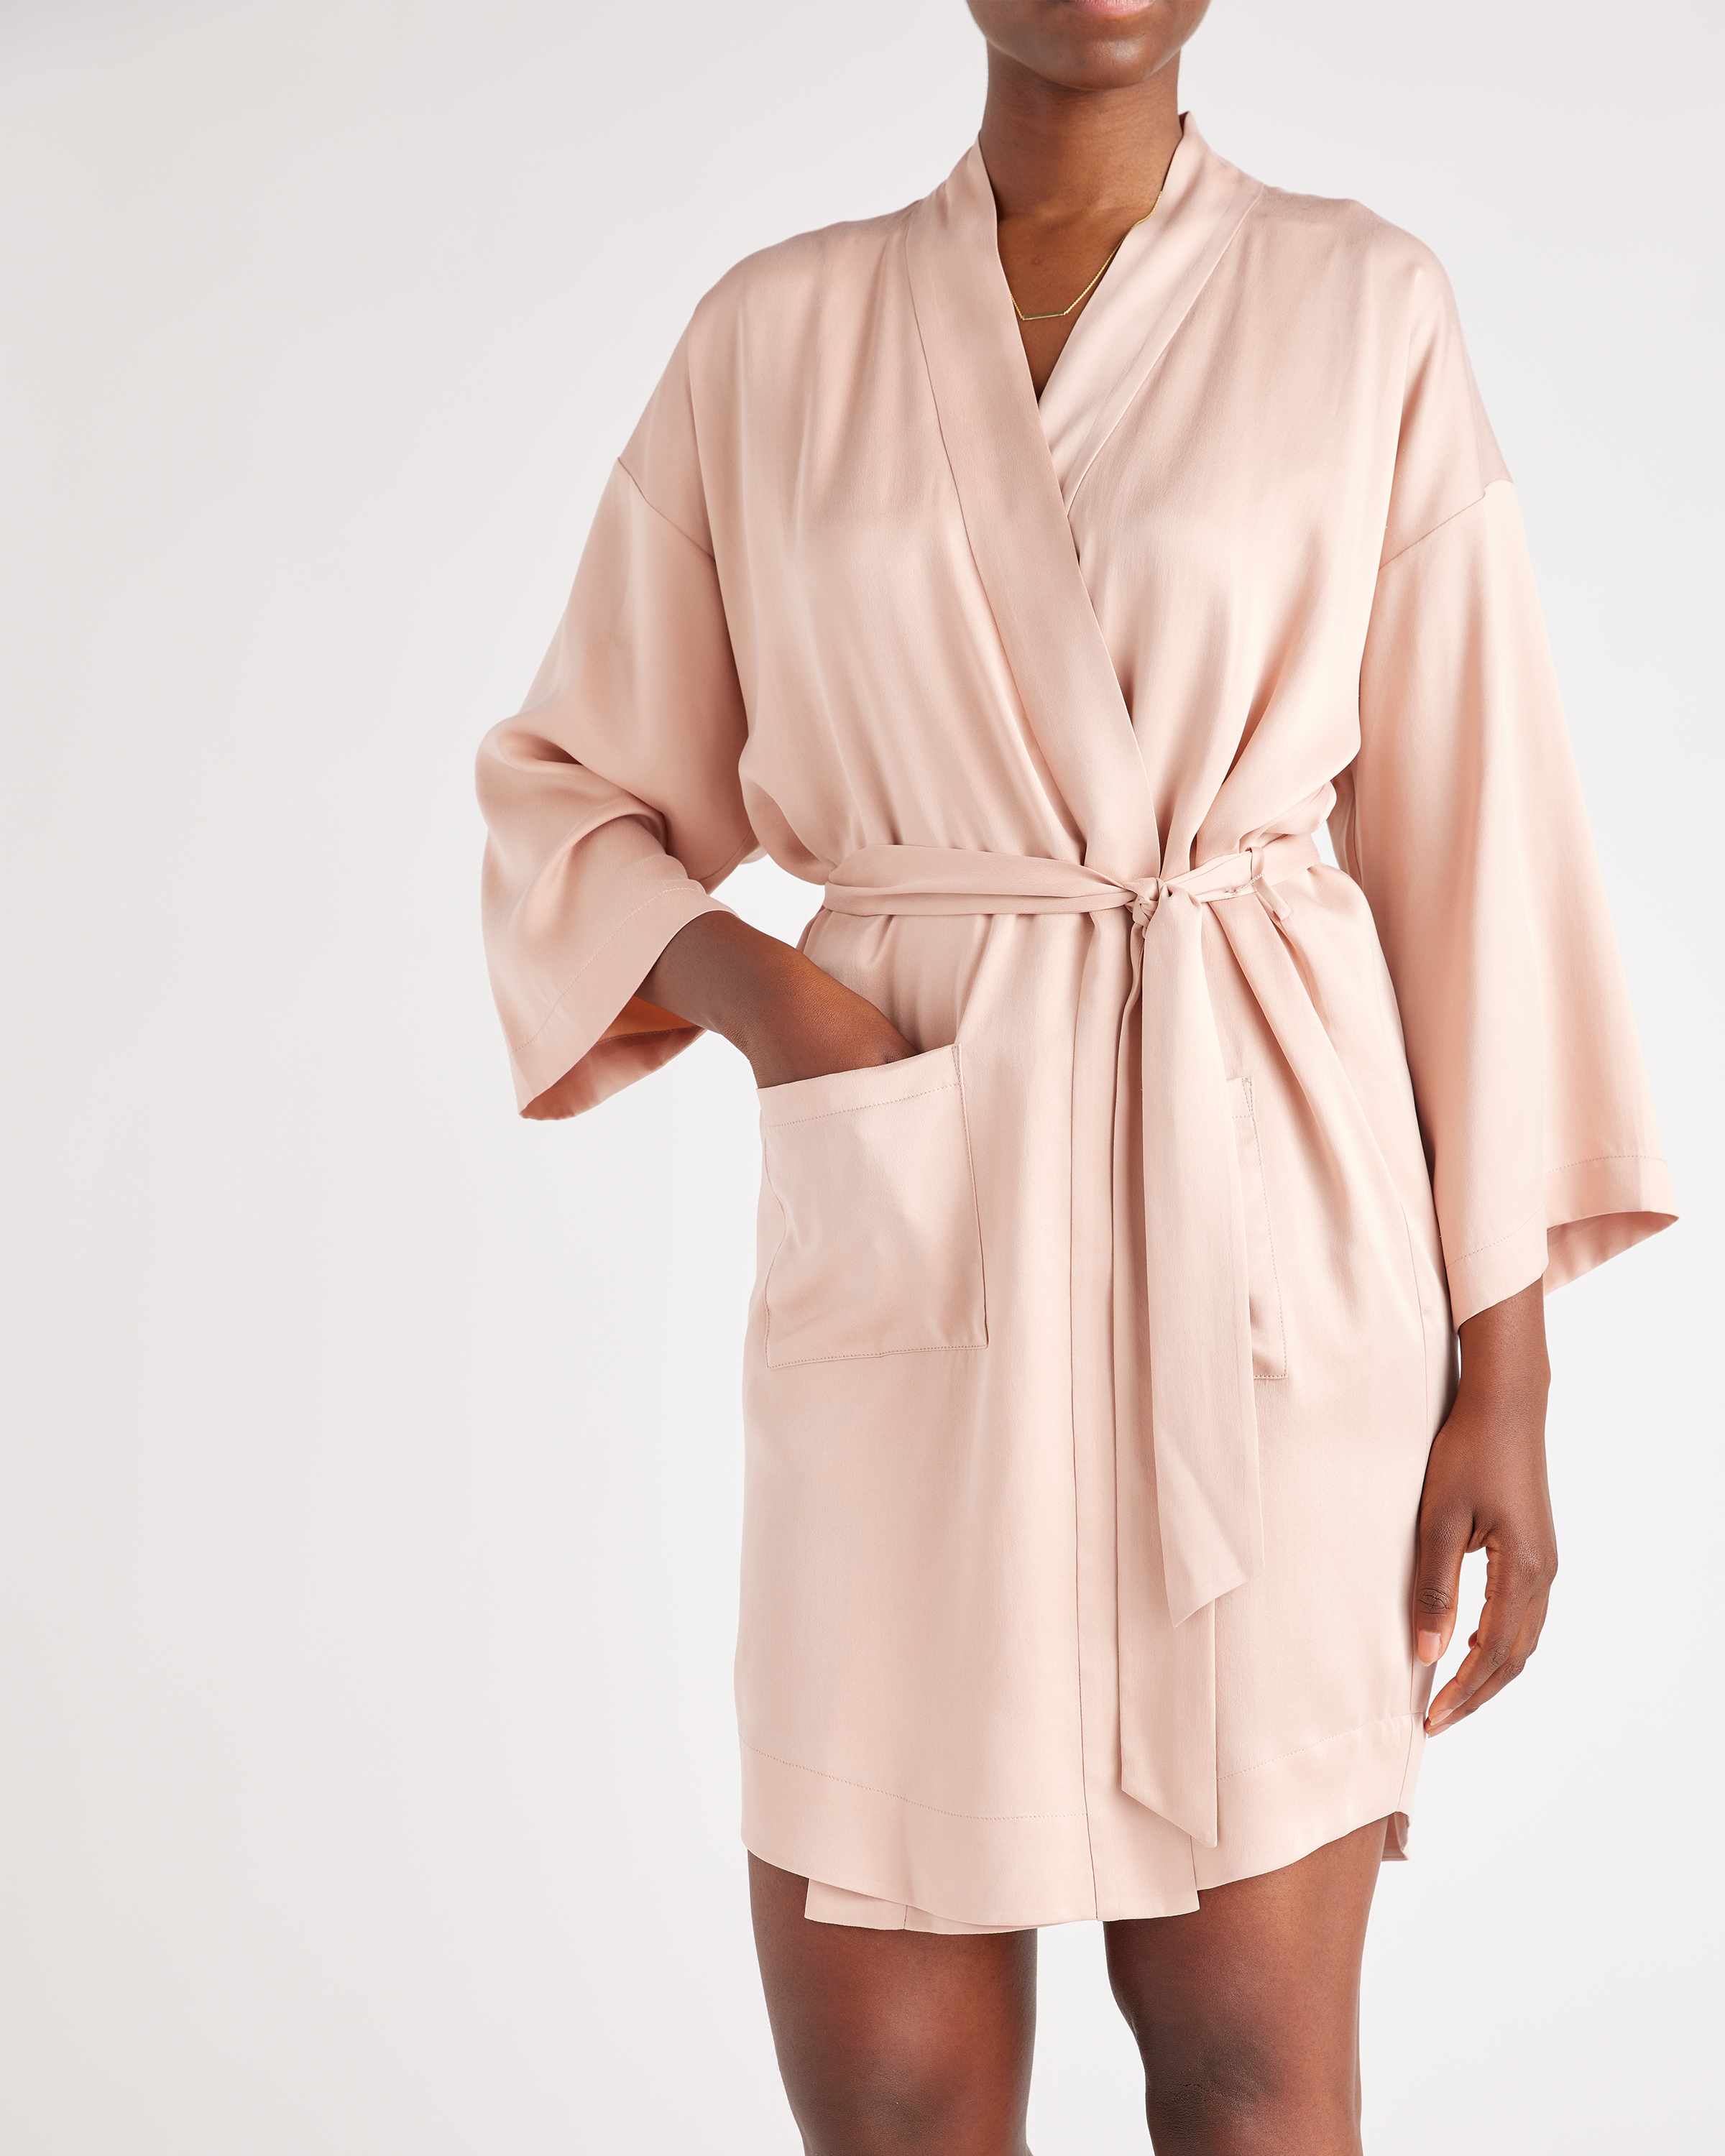 Simply Silk Robe Long Sleeves 100 Silk Sleepwear